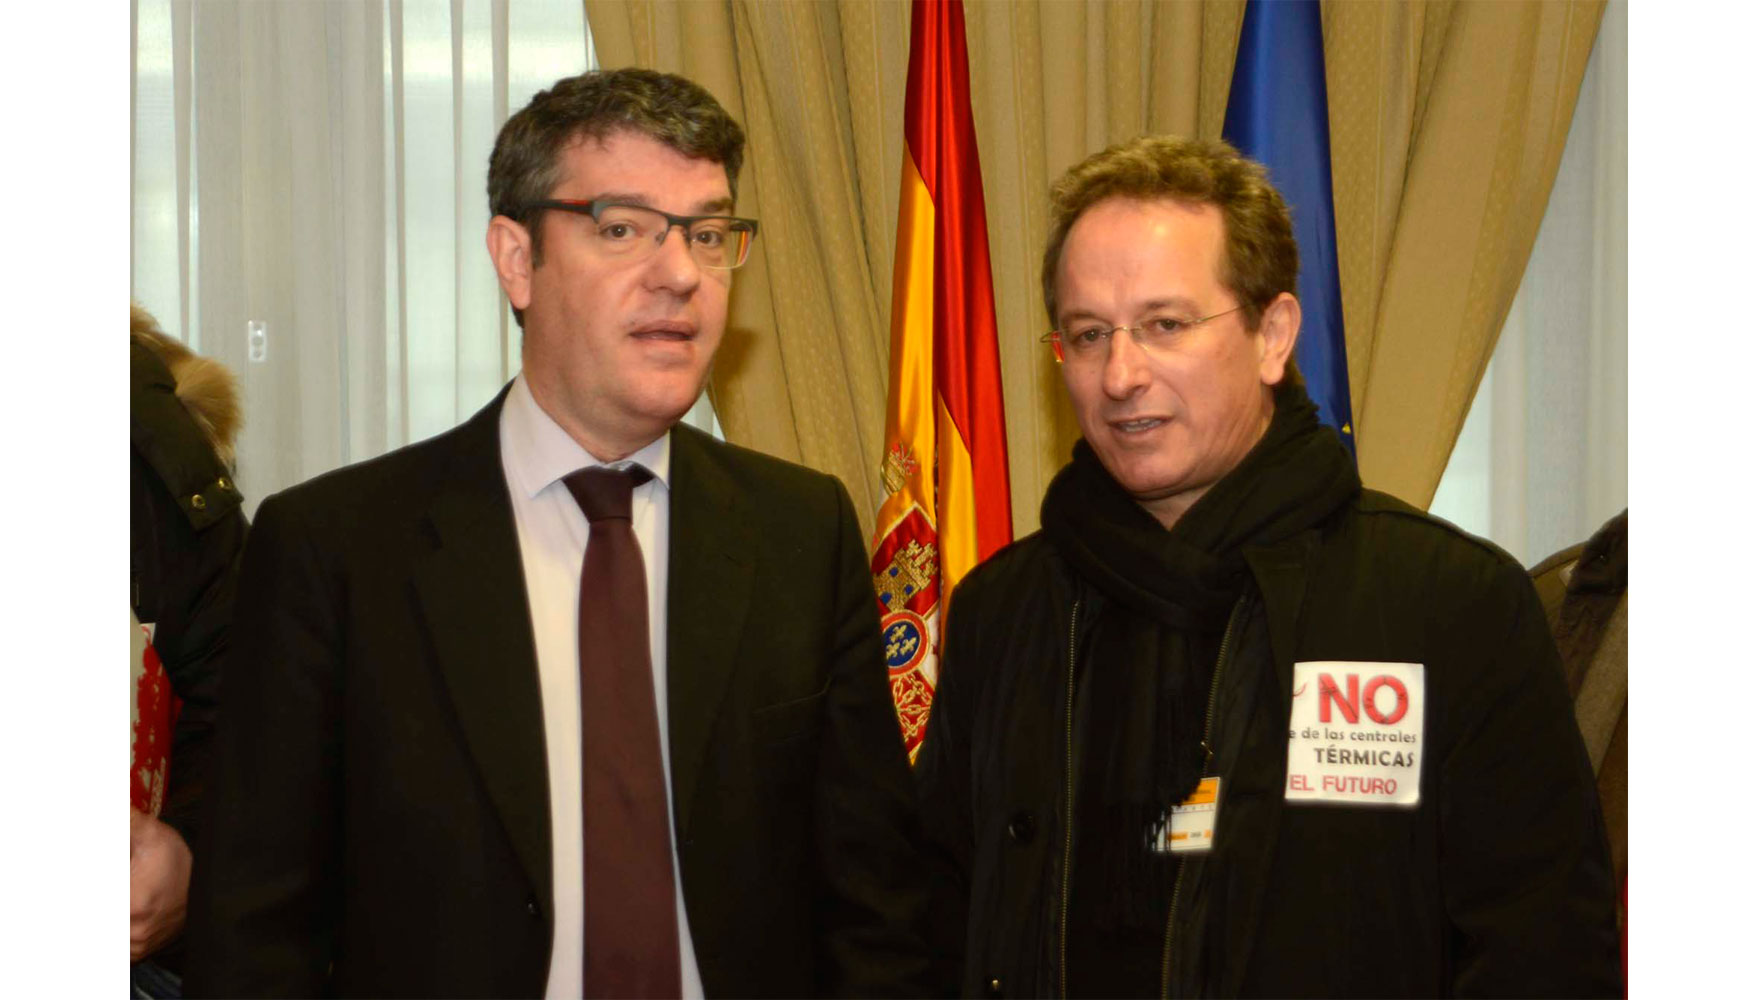 El Ministro, lvaro Nadal, junto con el representante de la organizacion sindical UGT